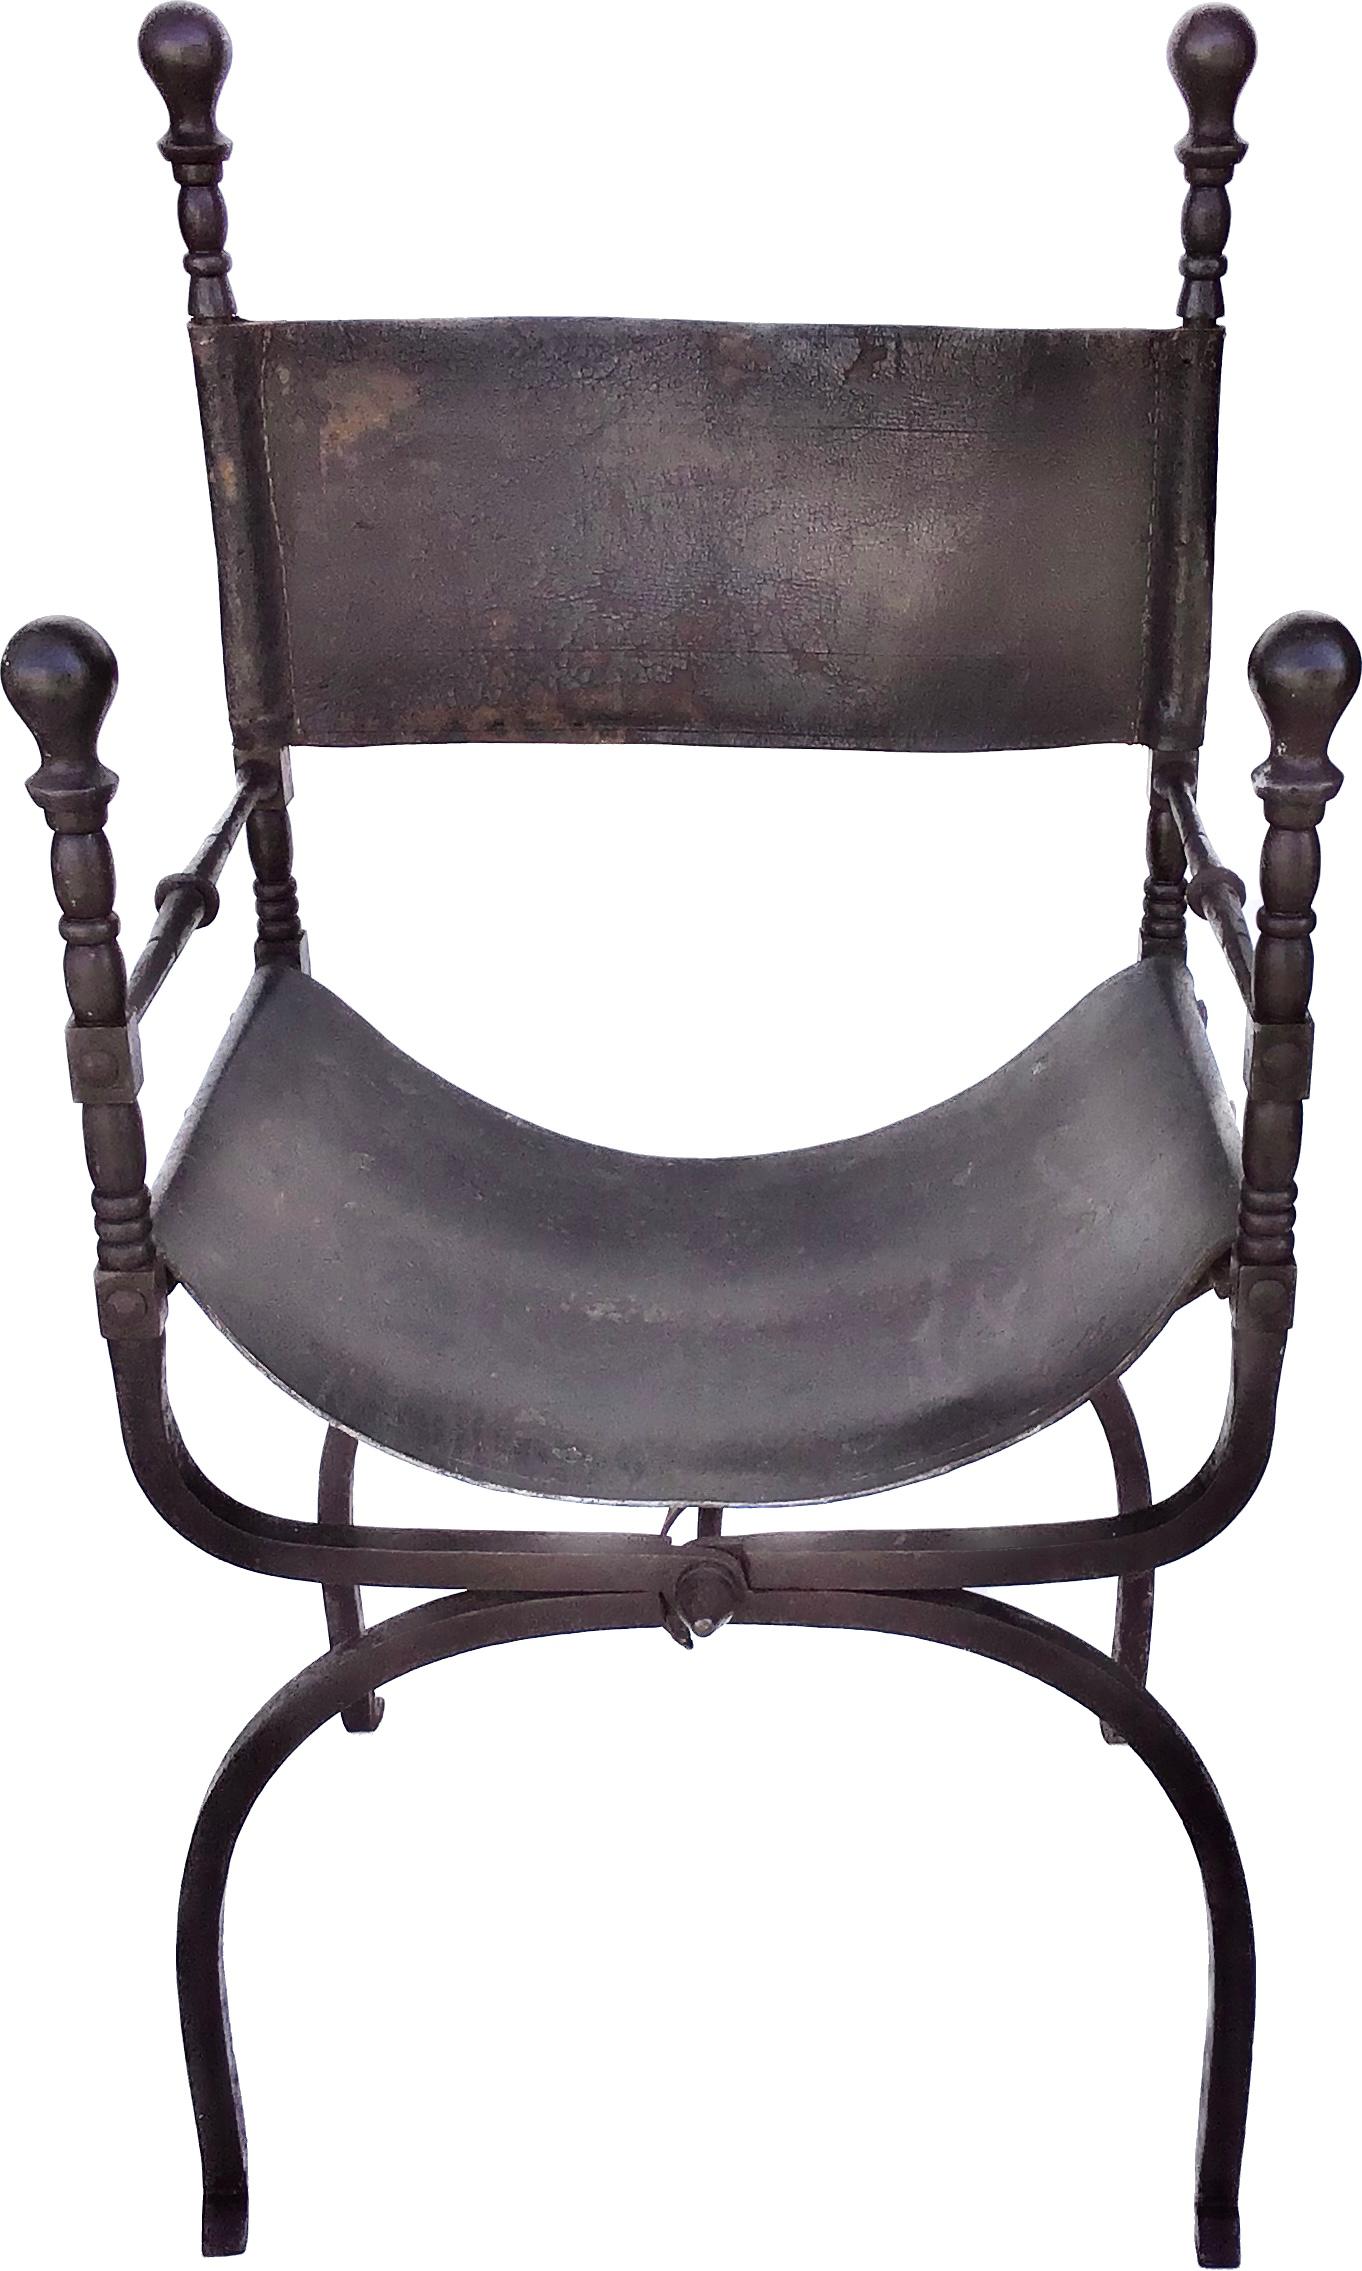 Wunderschöner italienischer Eisenstuhl Savonarola Dante, auch bekannt als Curule-Stühle. Mit einem scherenförmigen Eisenrahmen, der sich im Campaigner-Stil faltet, mit eisernen Endstücken und Füßen. Sitz und Rückenlehne sind mit dickem, gealtertem